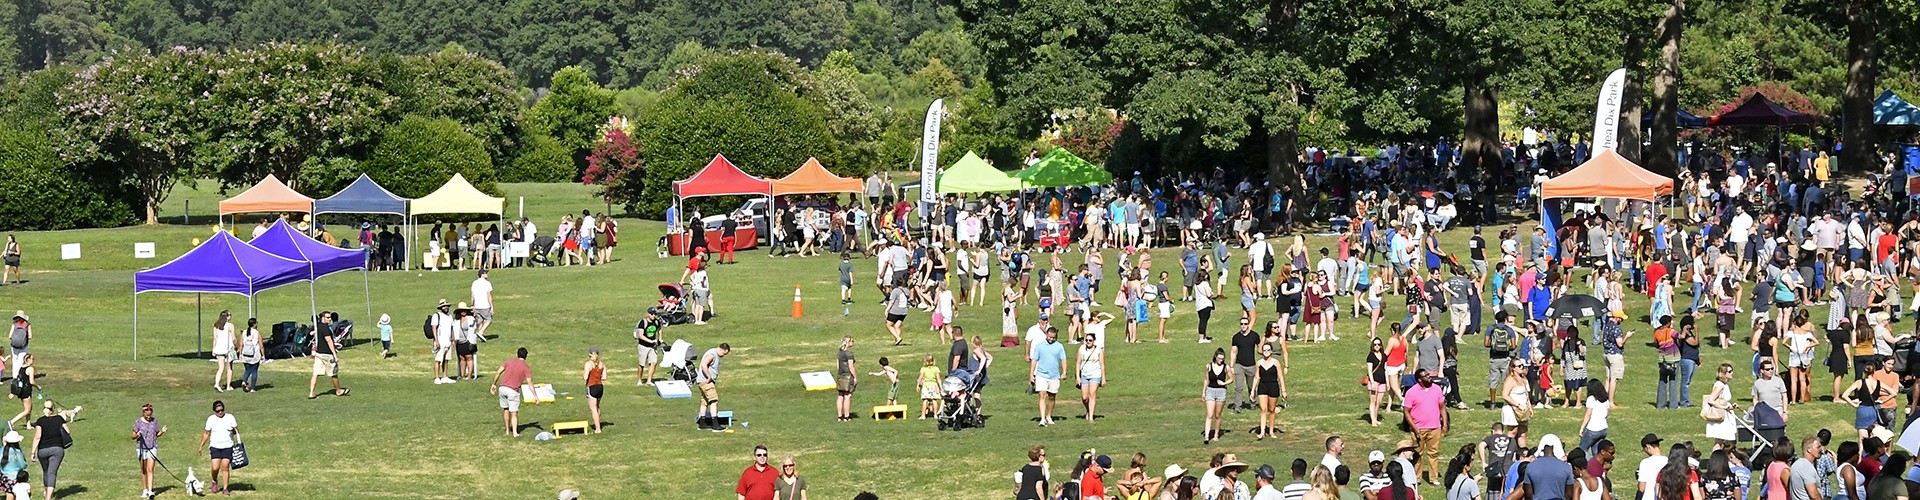 festival at Dix Park